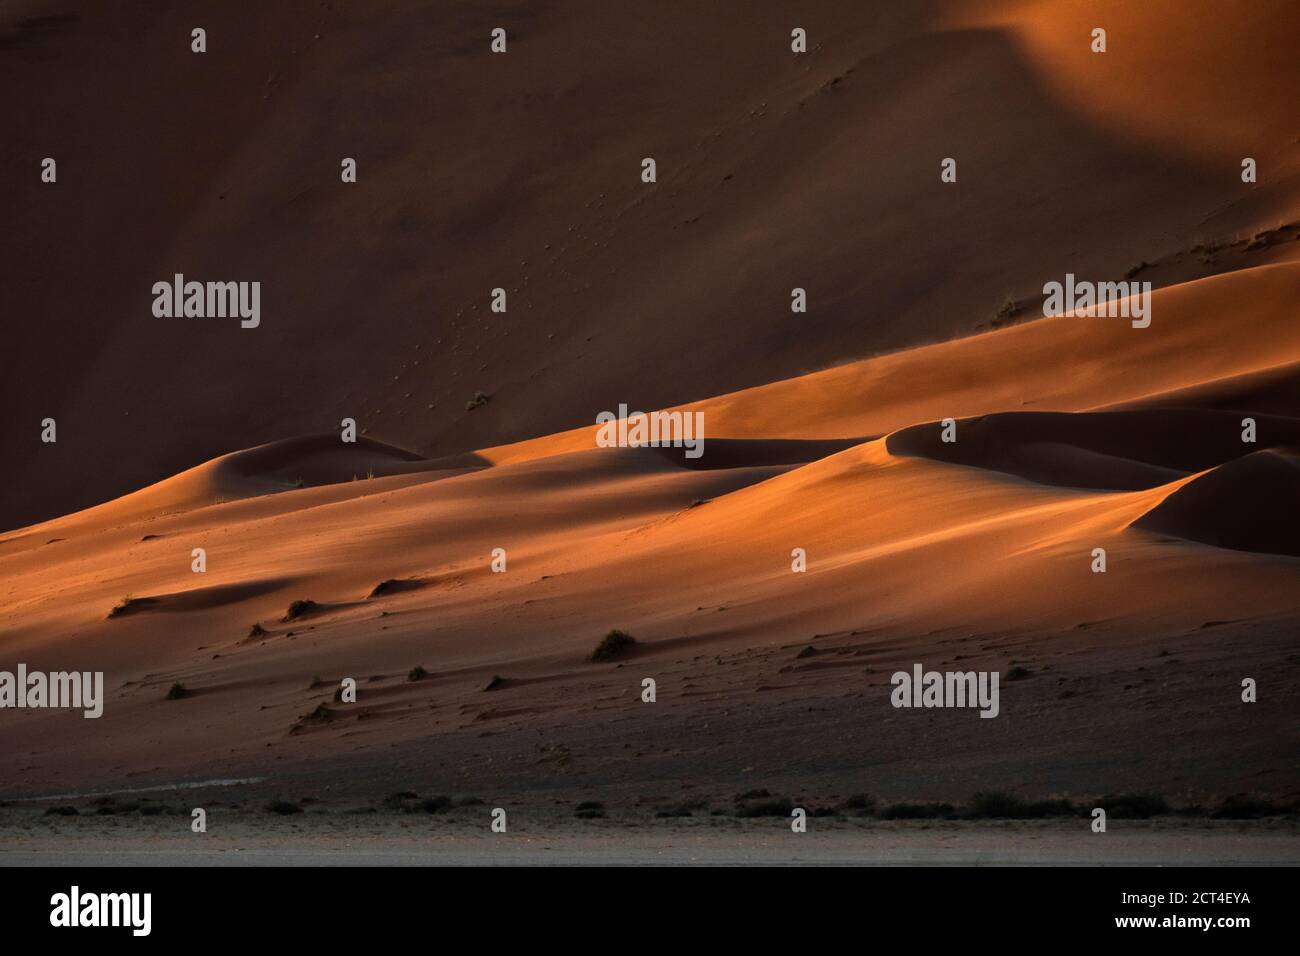 Astratto contrastato delle dune di sabbia rossa ricche di ossidi nel grande mare di sabbia della Namibia. Foto Stock